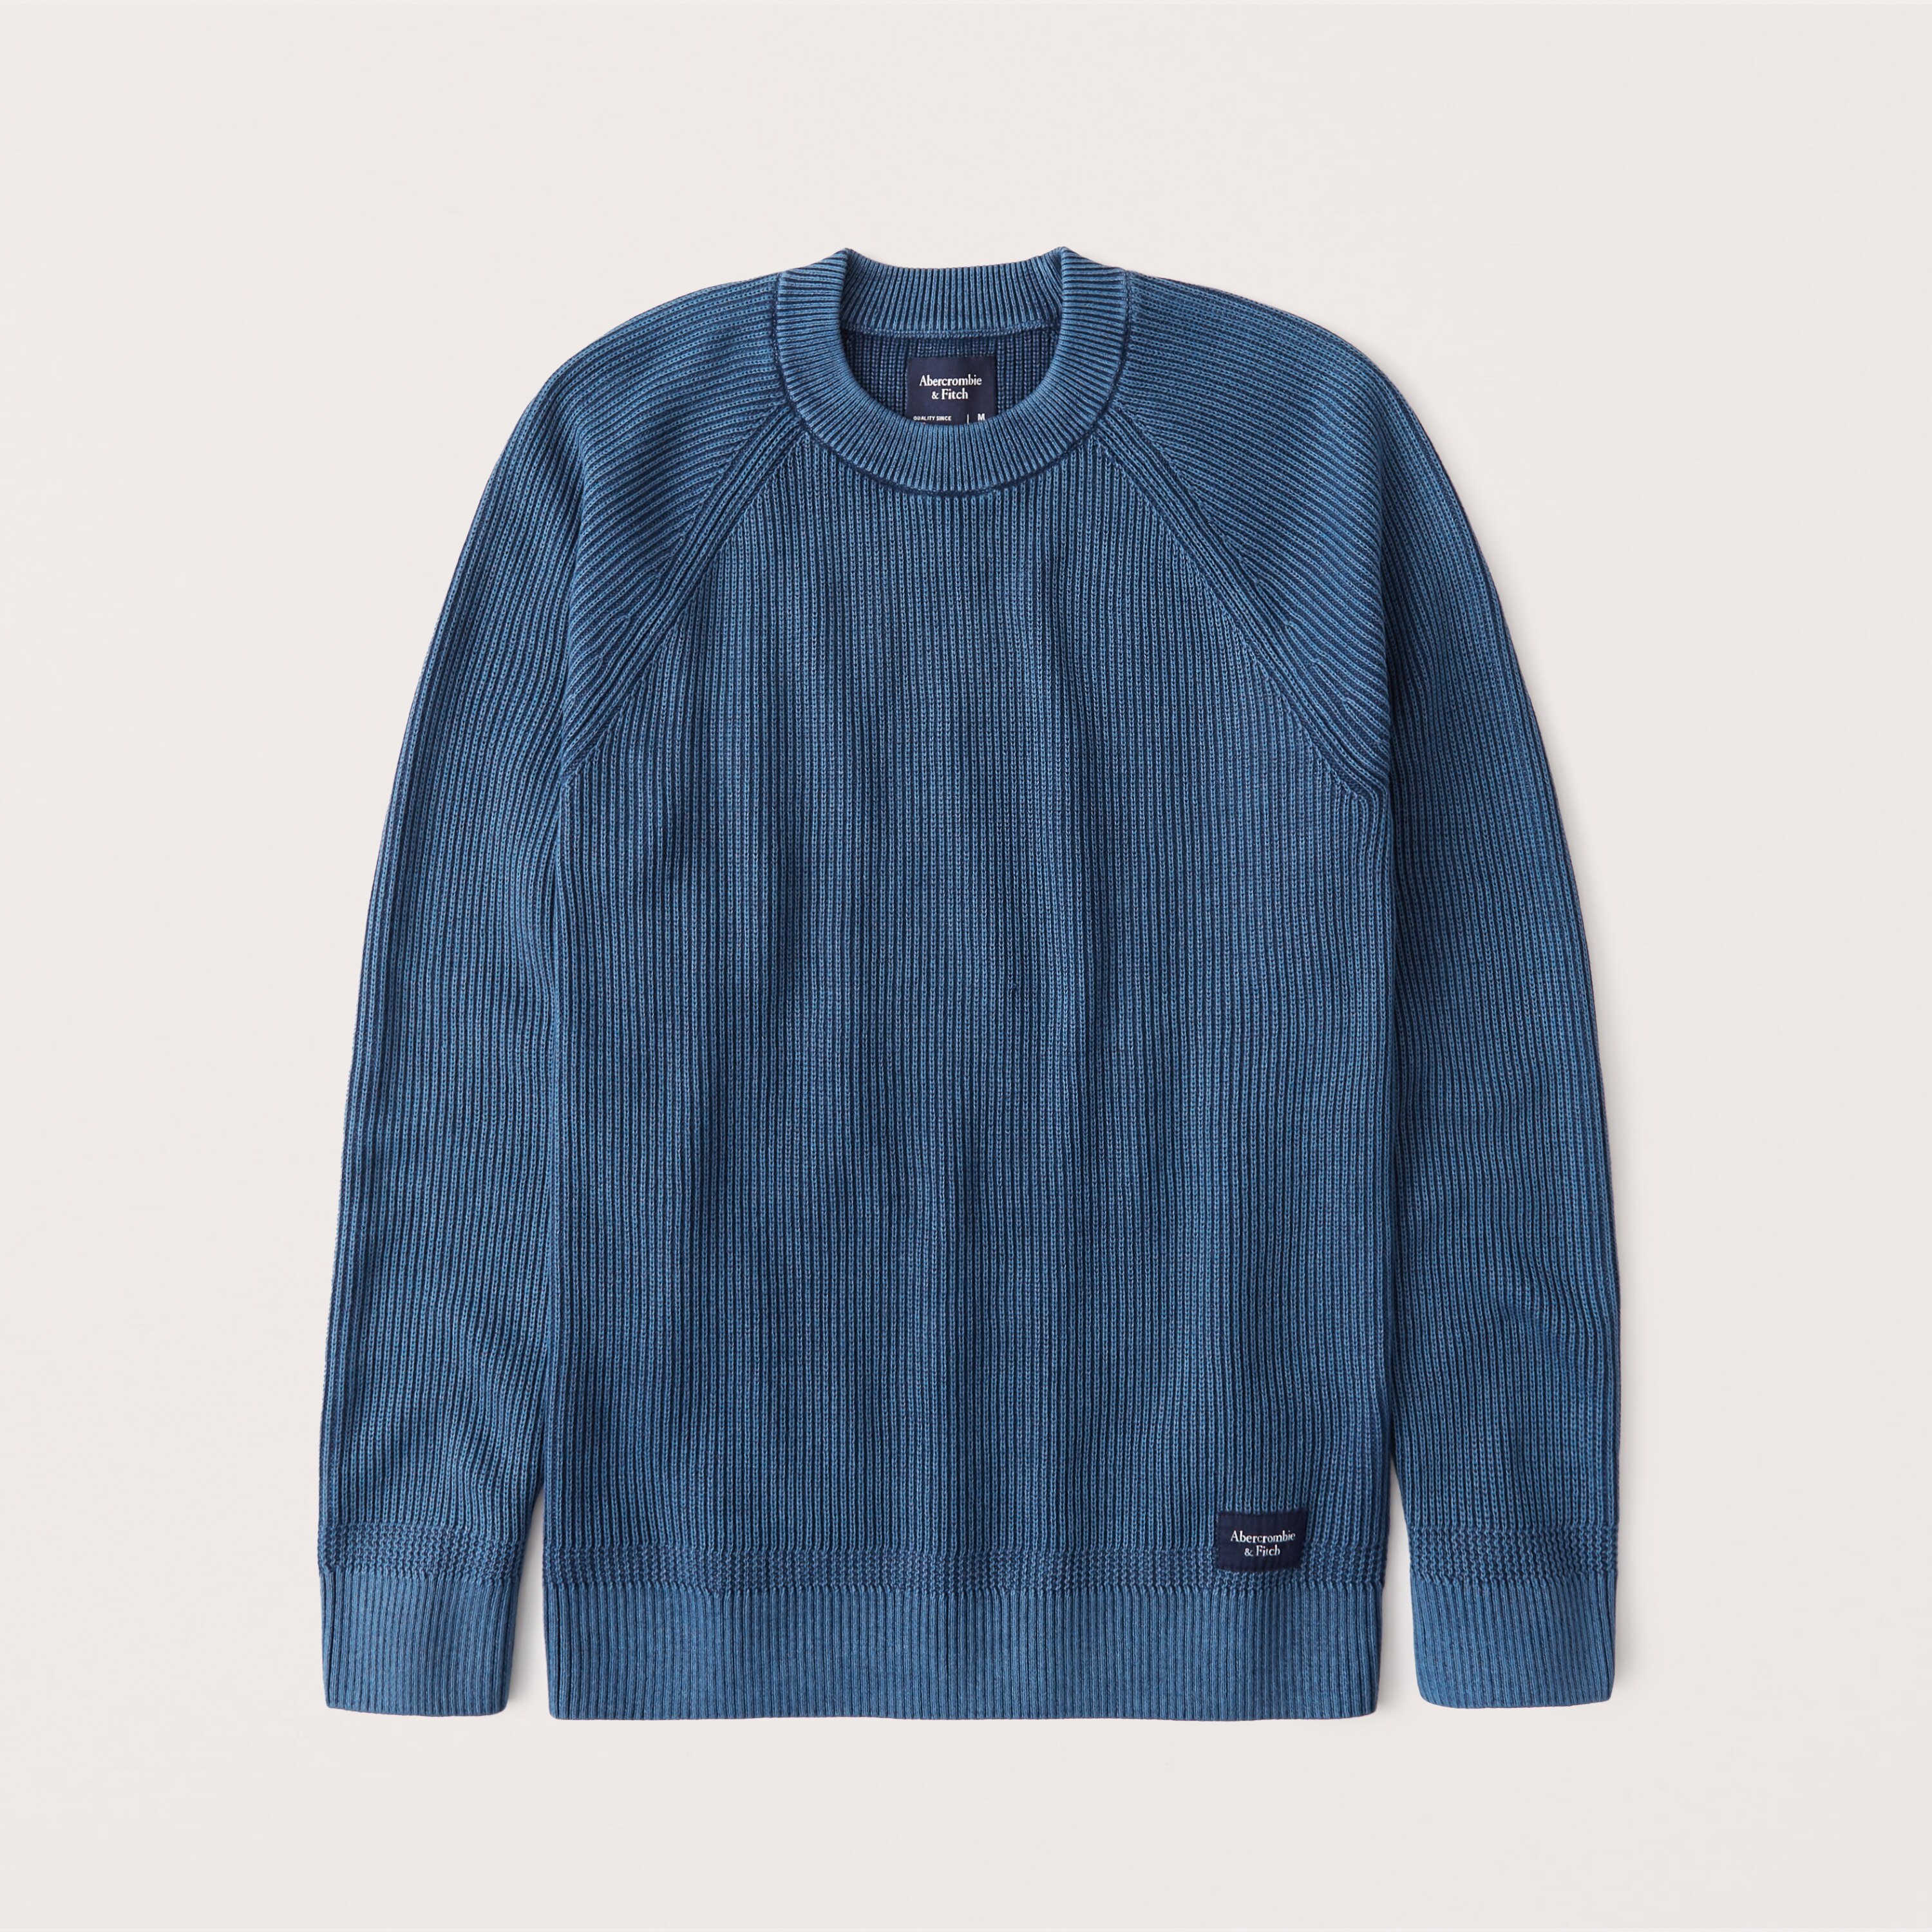 アバクロンビー＆フィッチ 【5/17 13時~エントリーでP20倍】 Abercrombie＆Fitch (アバクロンビー＆フィッチ)ラグラン コットン クルーネックセーター (ニット) (Garment Dye Wash Crew Sweater) メンズ (Blue) 新品